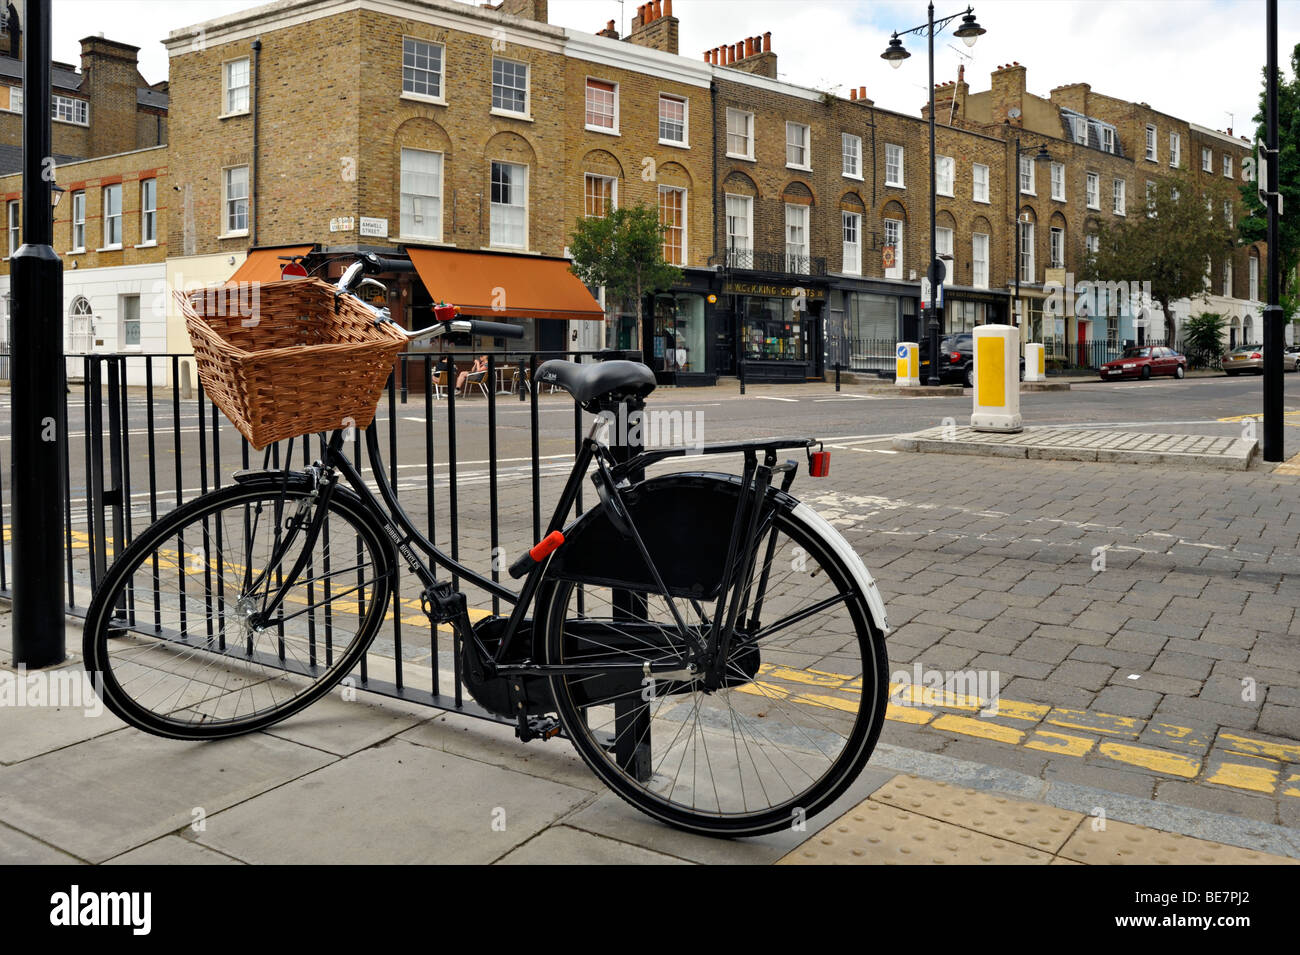 LONDRES, Royaume-Uni - 15 AOÛT 2009 : vélo enchaîné aux chemins de fer sur London Street avec bâtiment de style géorgien en arrière-plan Banque D'Images